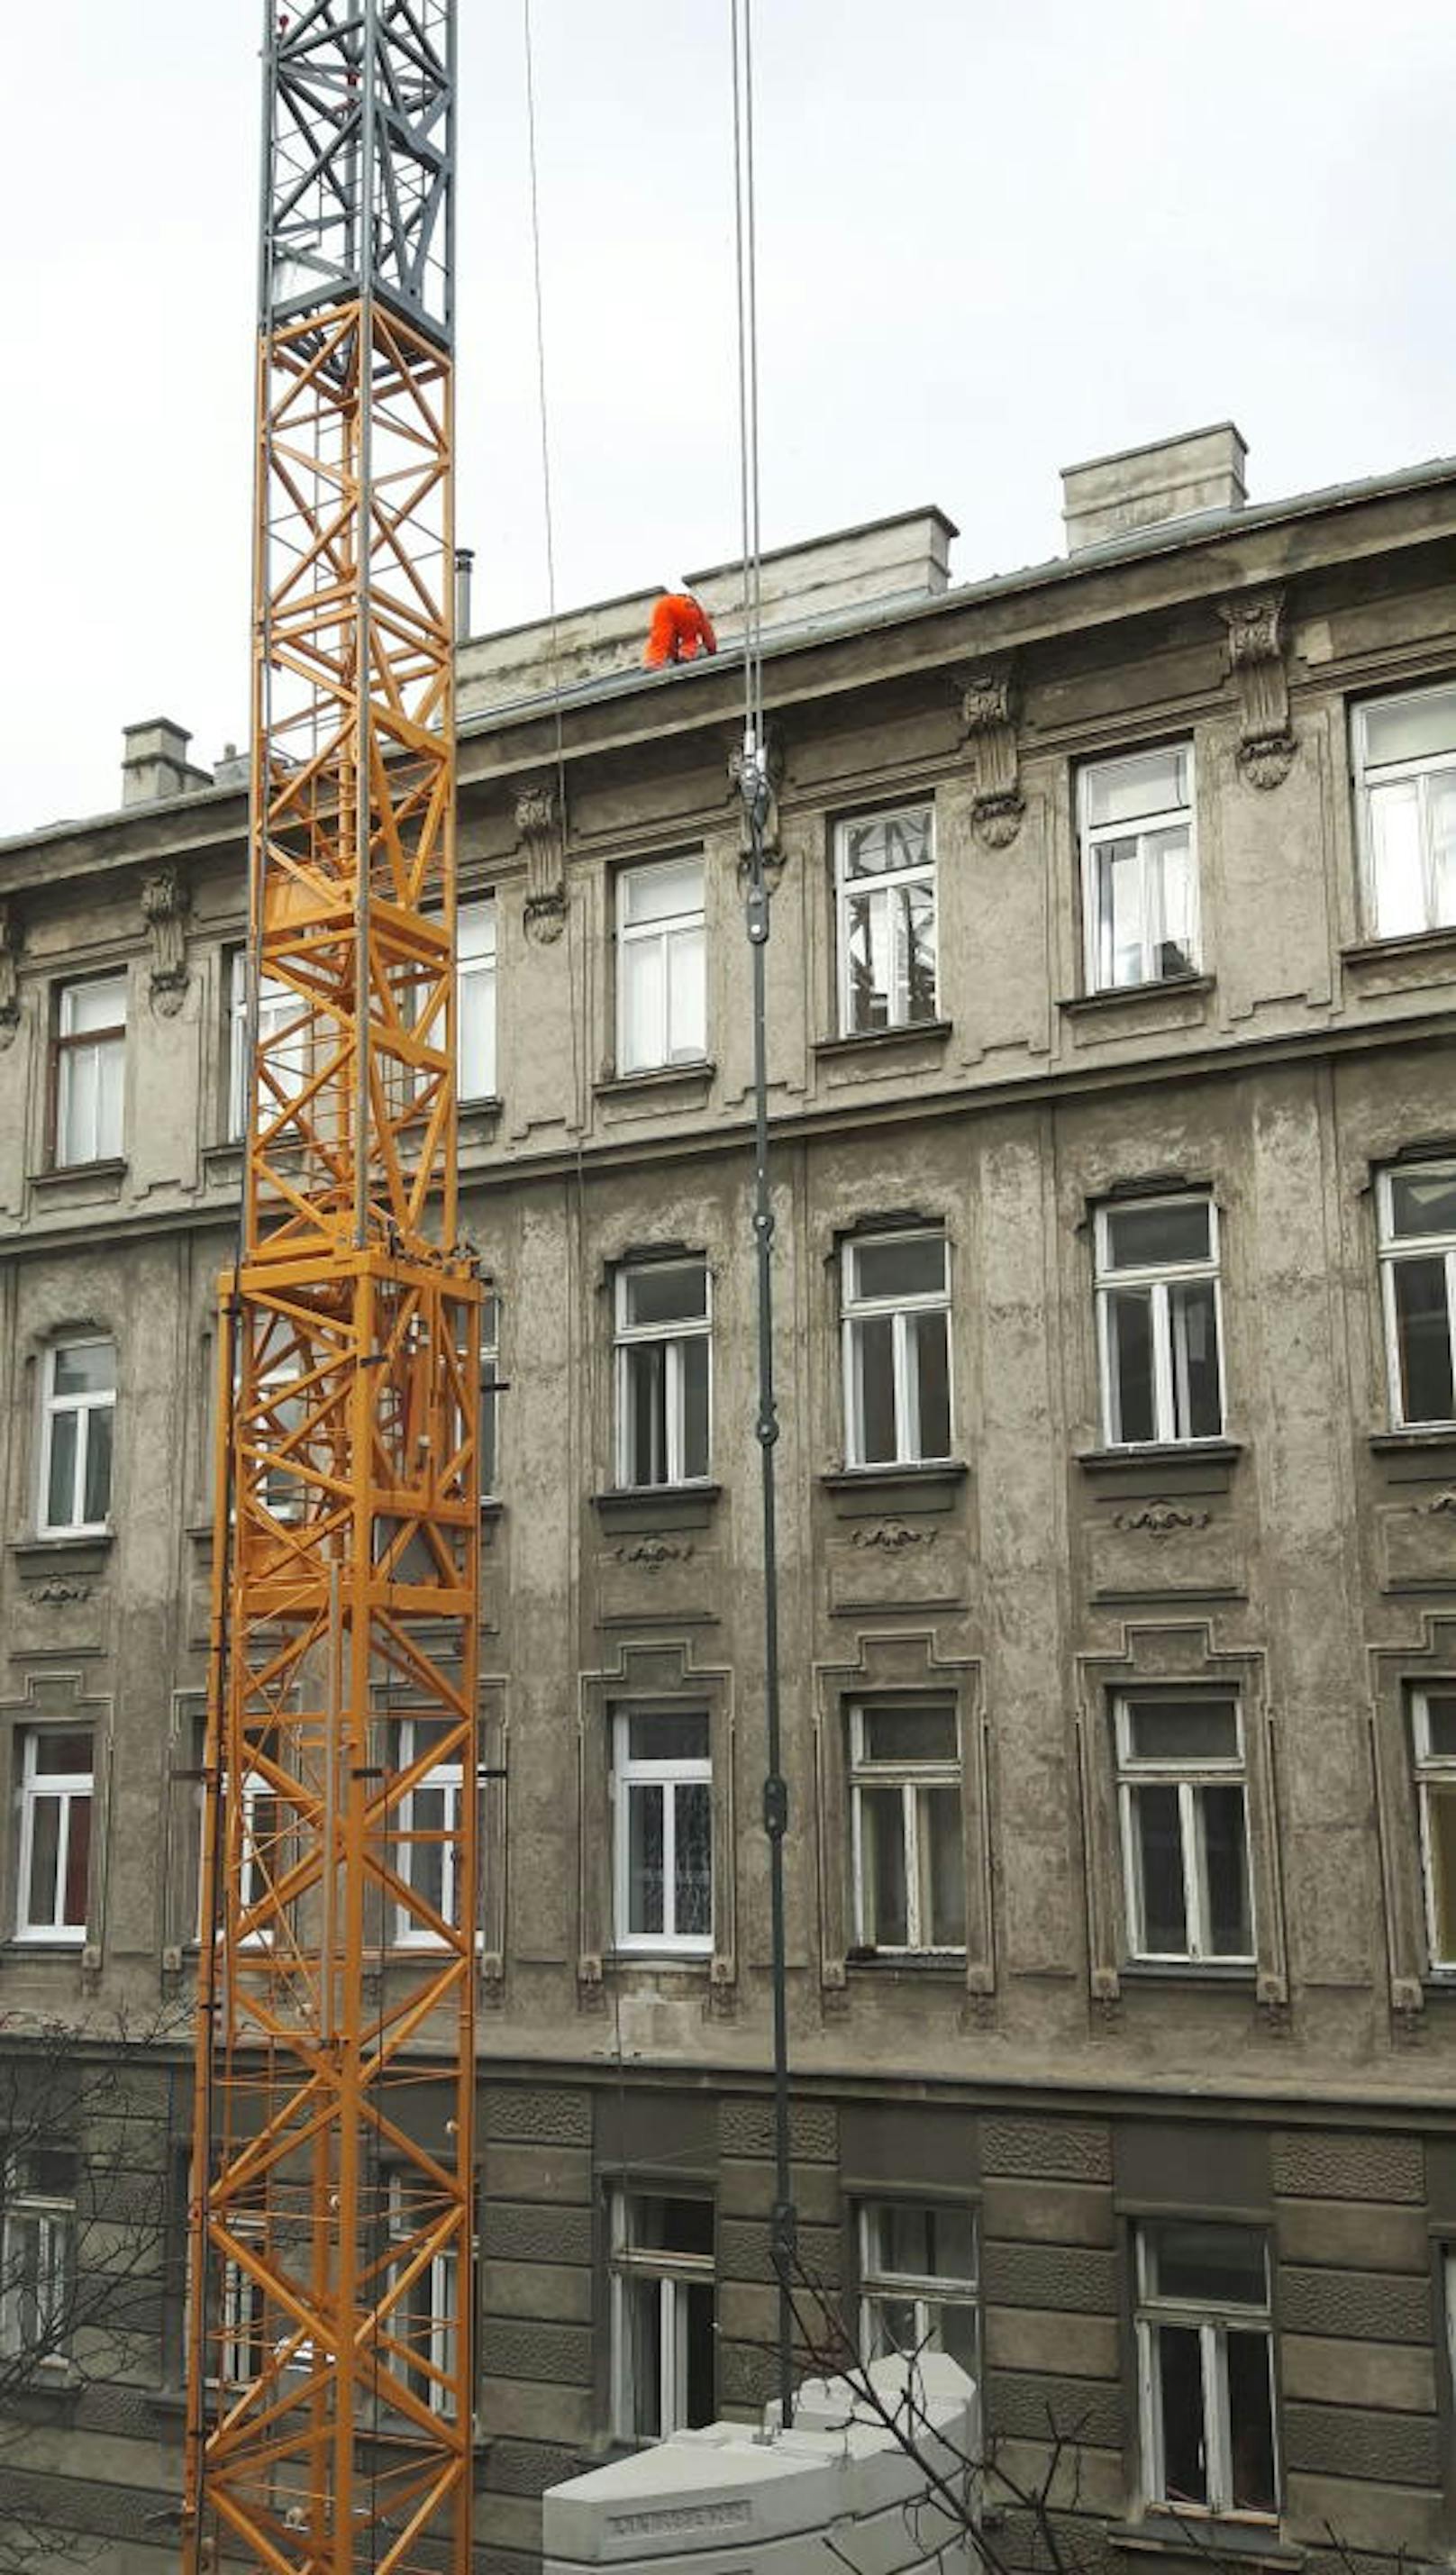 Vollkommen ungesichert arbeitet der Mann in Orange in schwindelerregender Höhe auf dem Dach eines Wiener Wohnhauses.